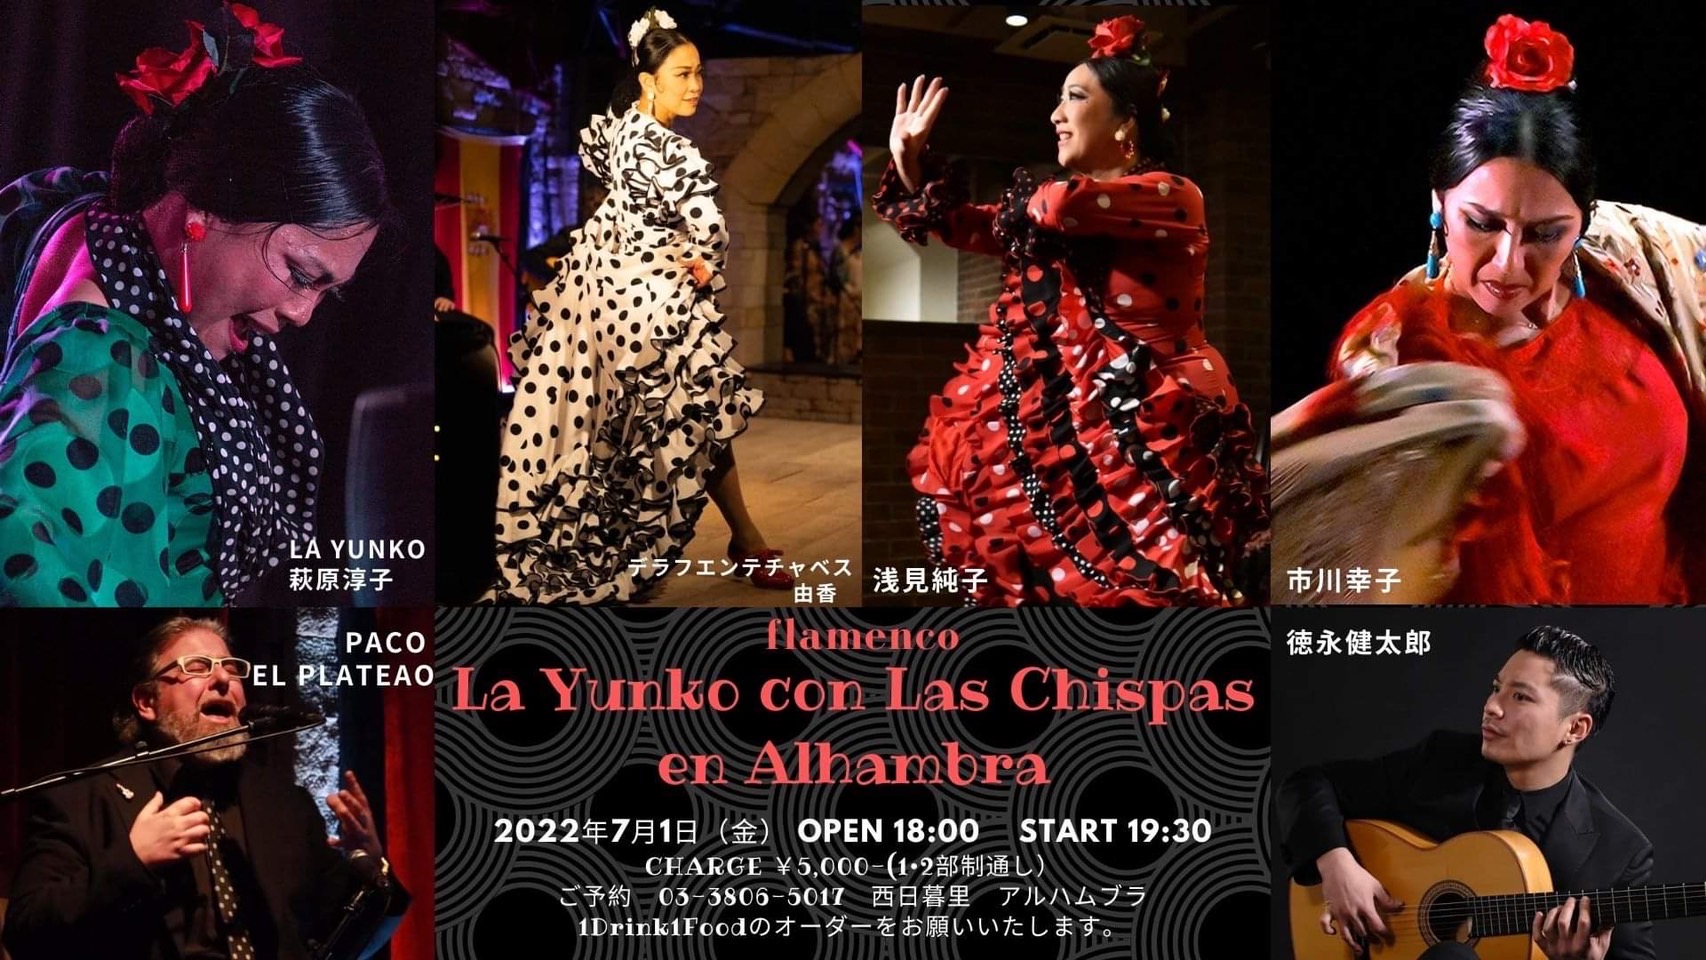 La Yunko con Las Chispas en Alhambra